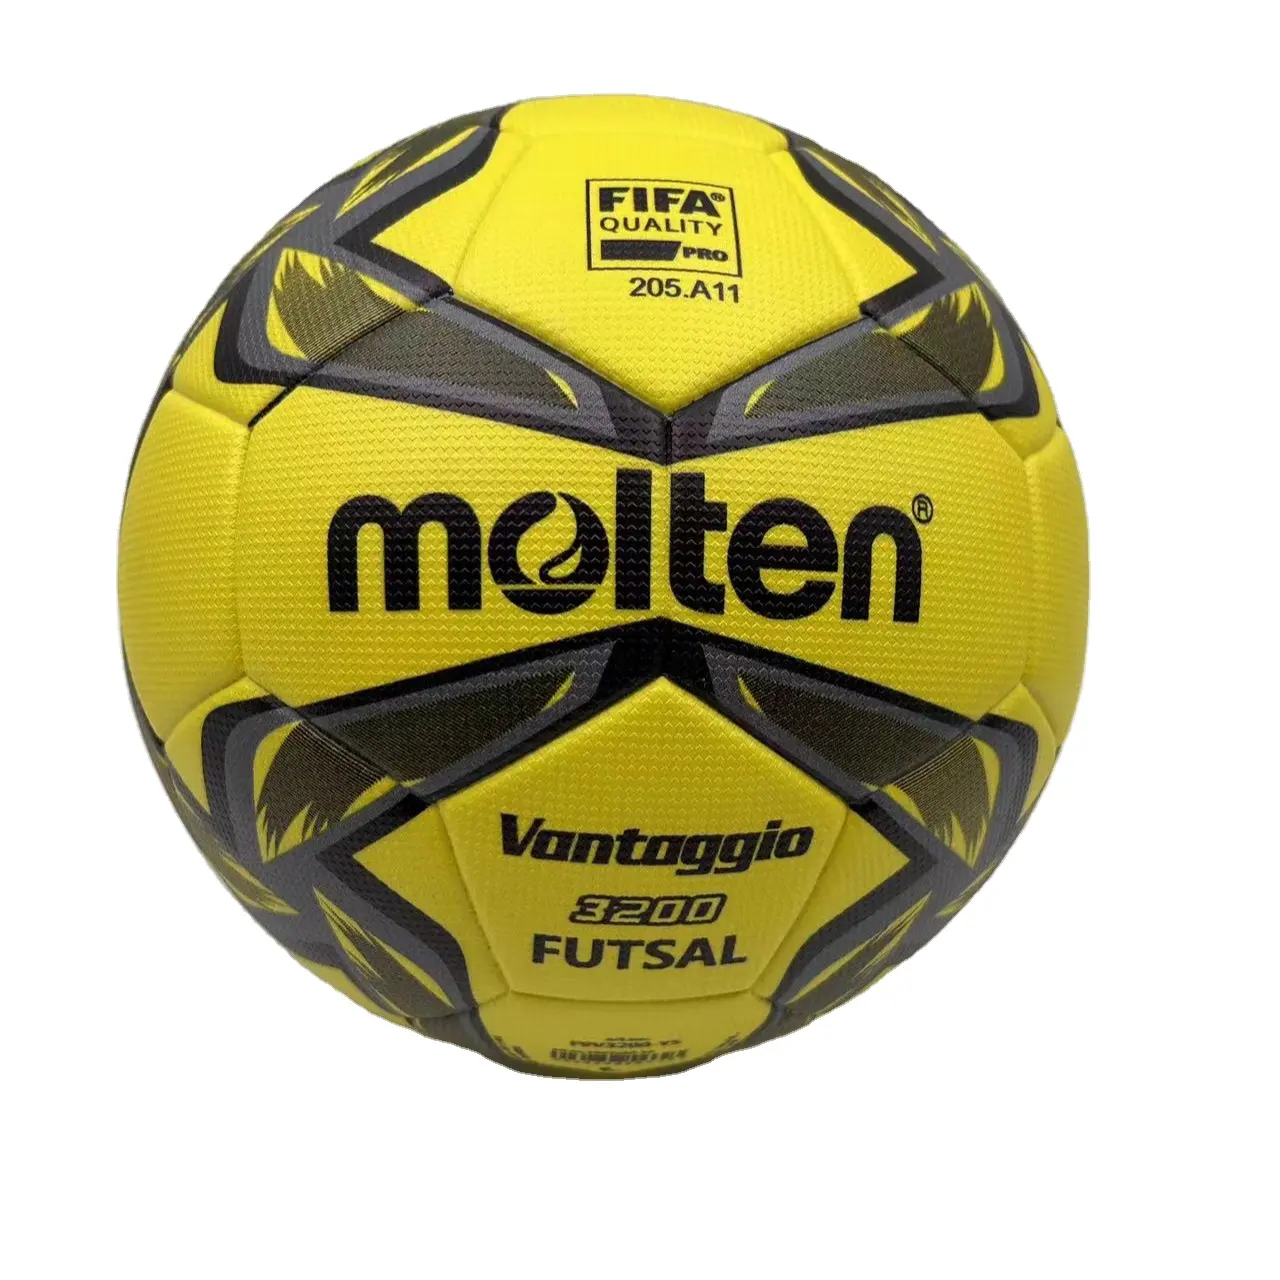 Futsal özel baskılı açık futbol futbol topu boyutu 5 sentetik PU lamine resmi boyut erimiş futbol topu eğitim